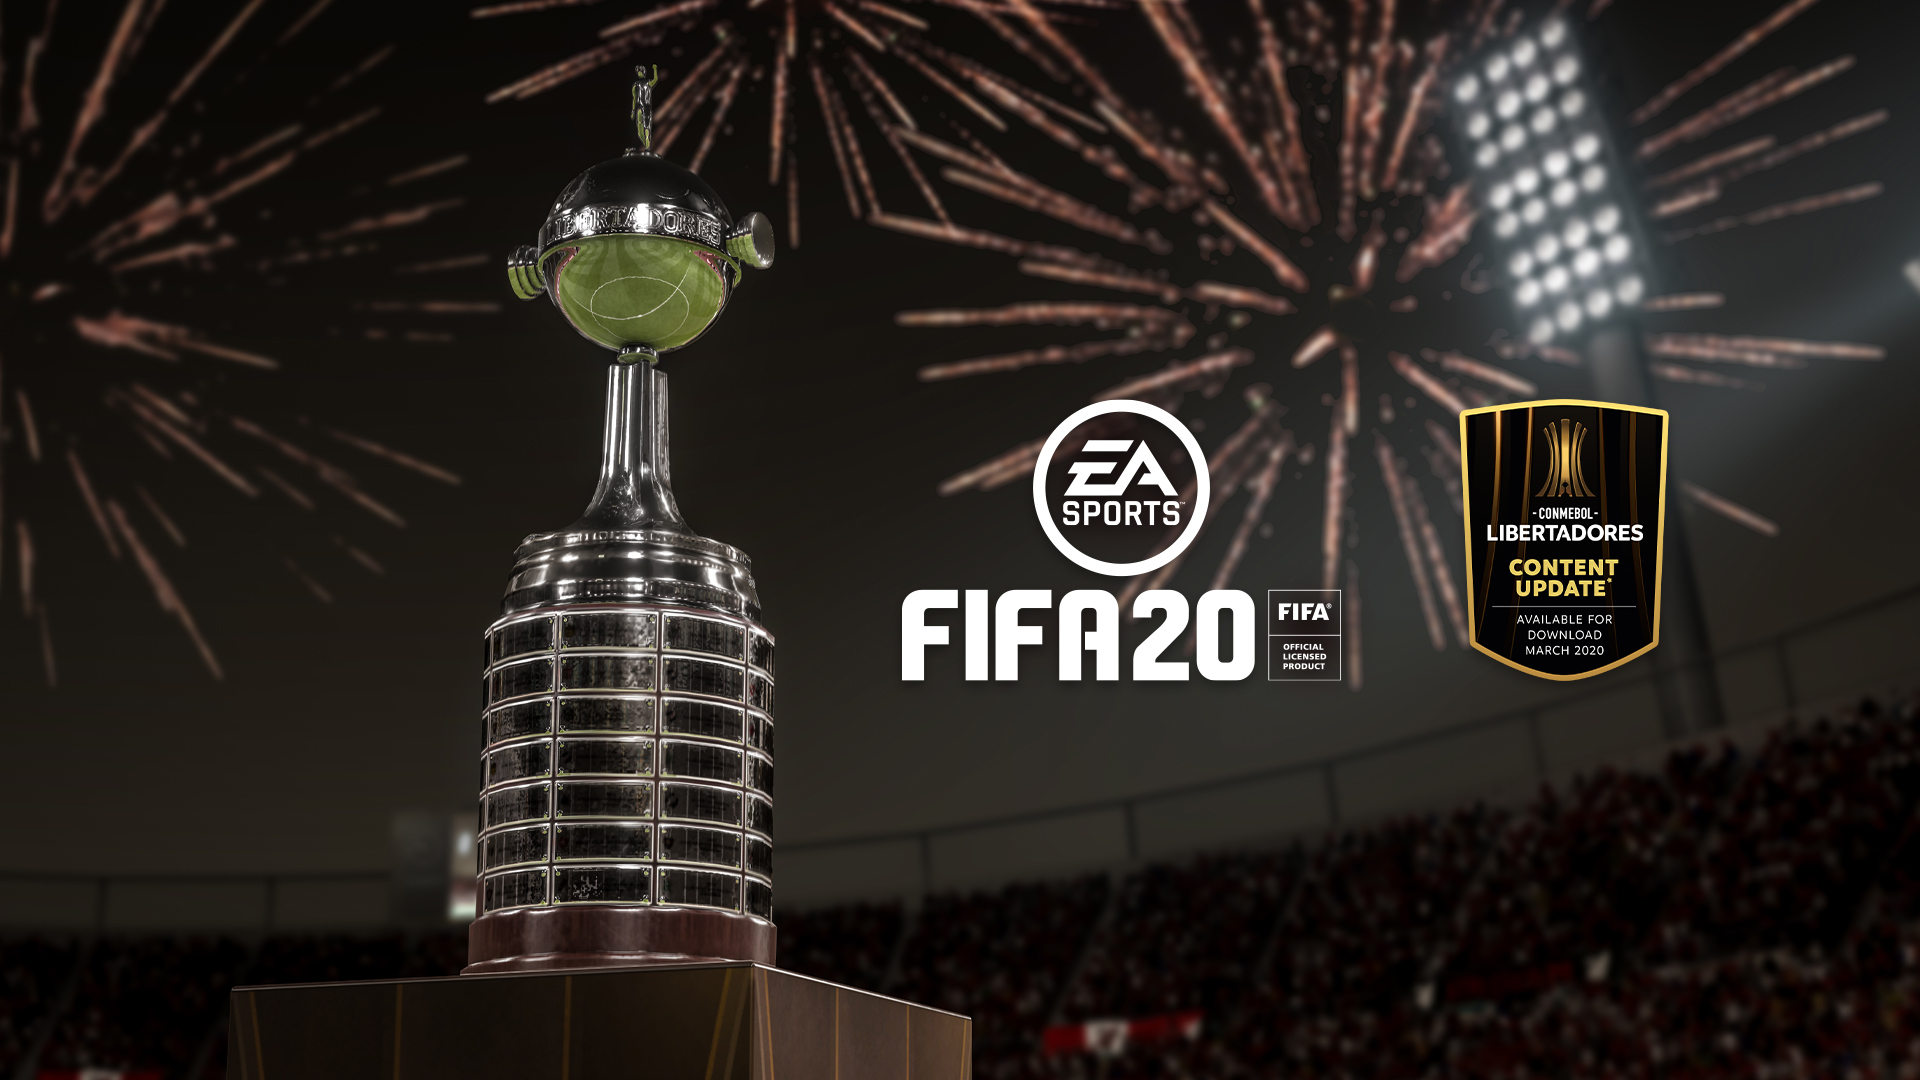 FIFA 20 voegt CONMEBOL Libertadores